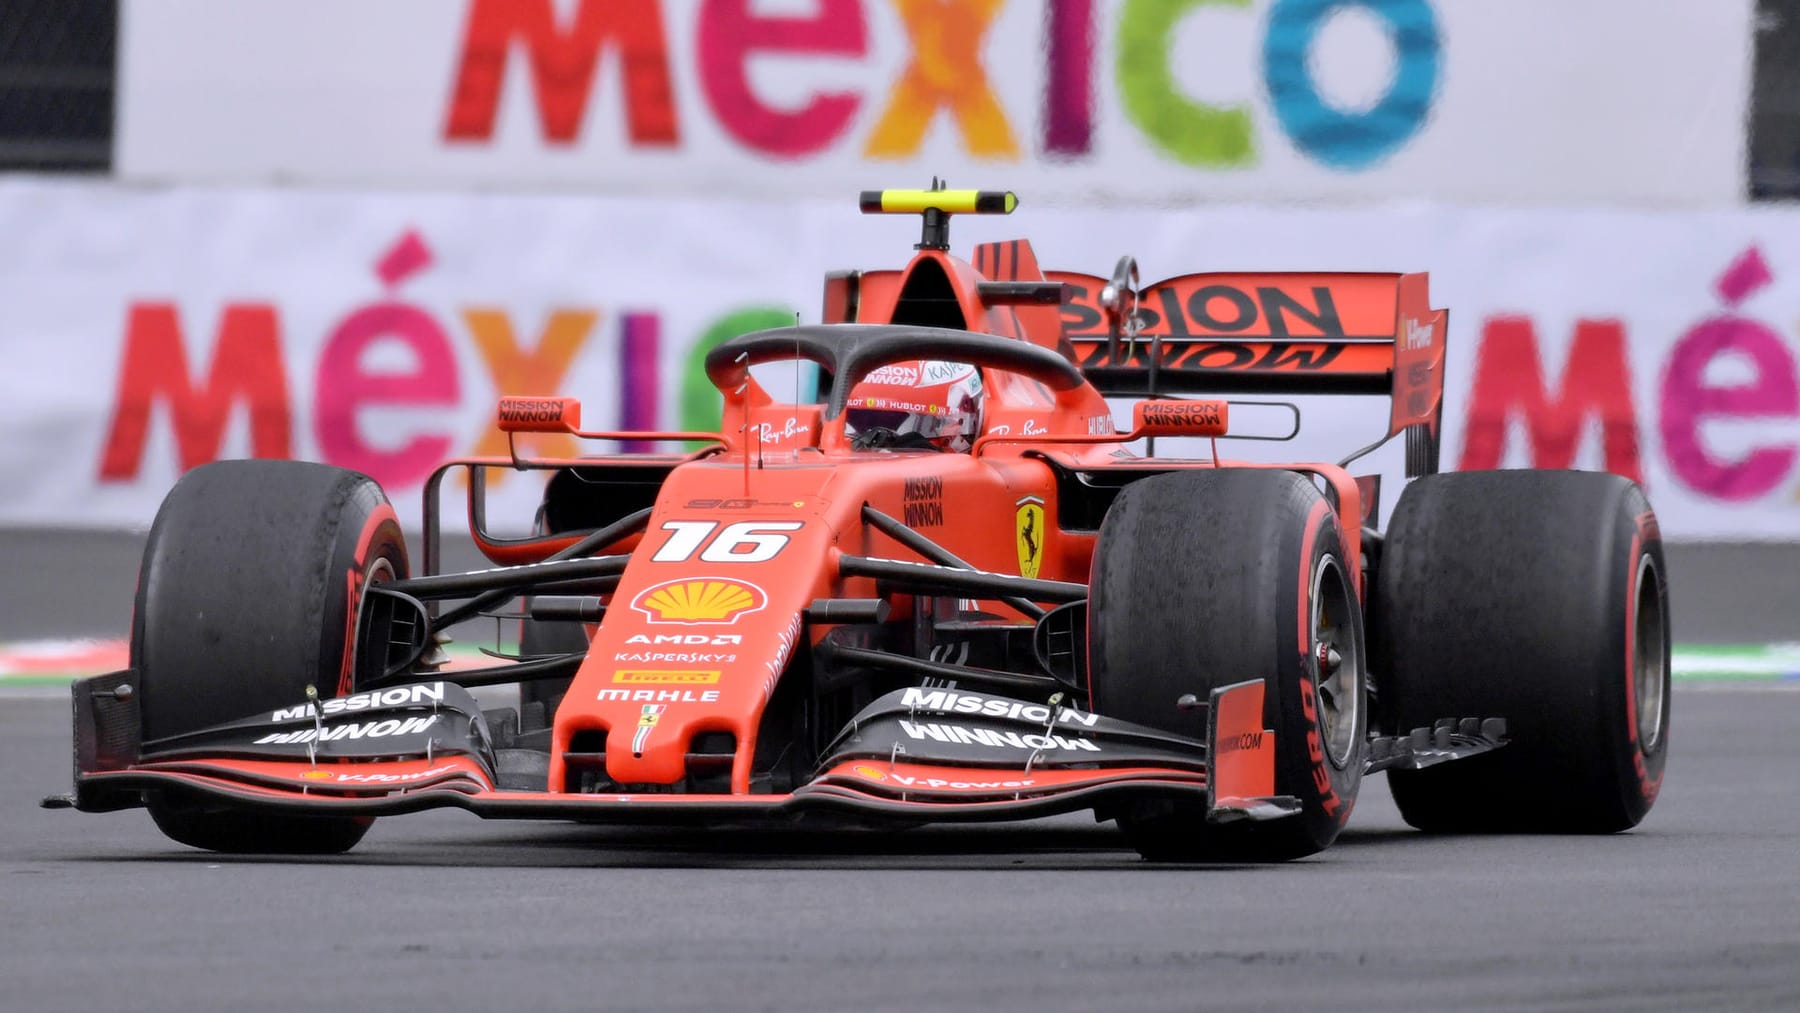 Formel 1 Großer Preis von Mexiko live im TV und Stream sehen